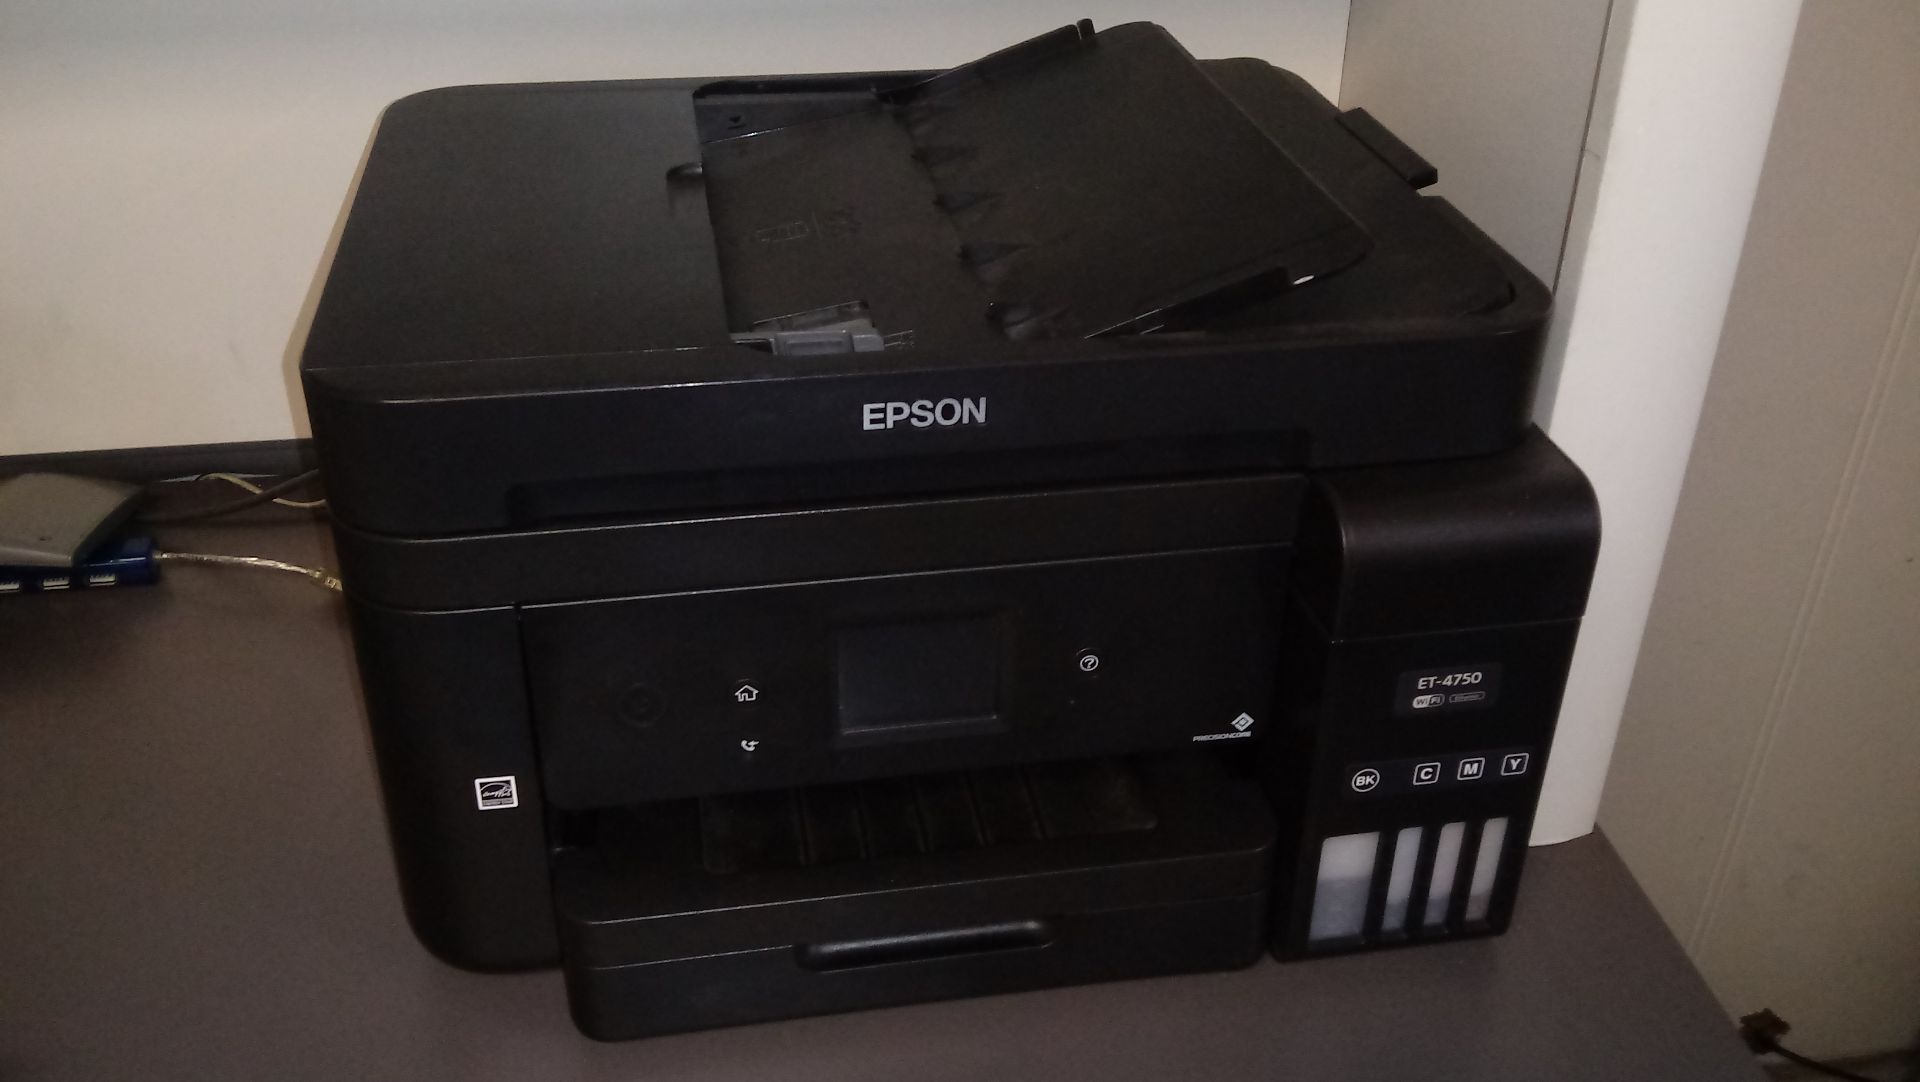 LOT: Acer Flat Screen Monitor, Epson Model ET-4750 Printer, Staples Paper Shredder - Image 2 of 3